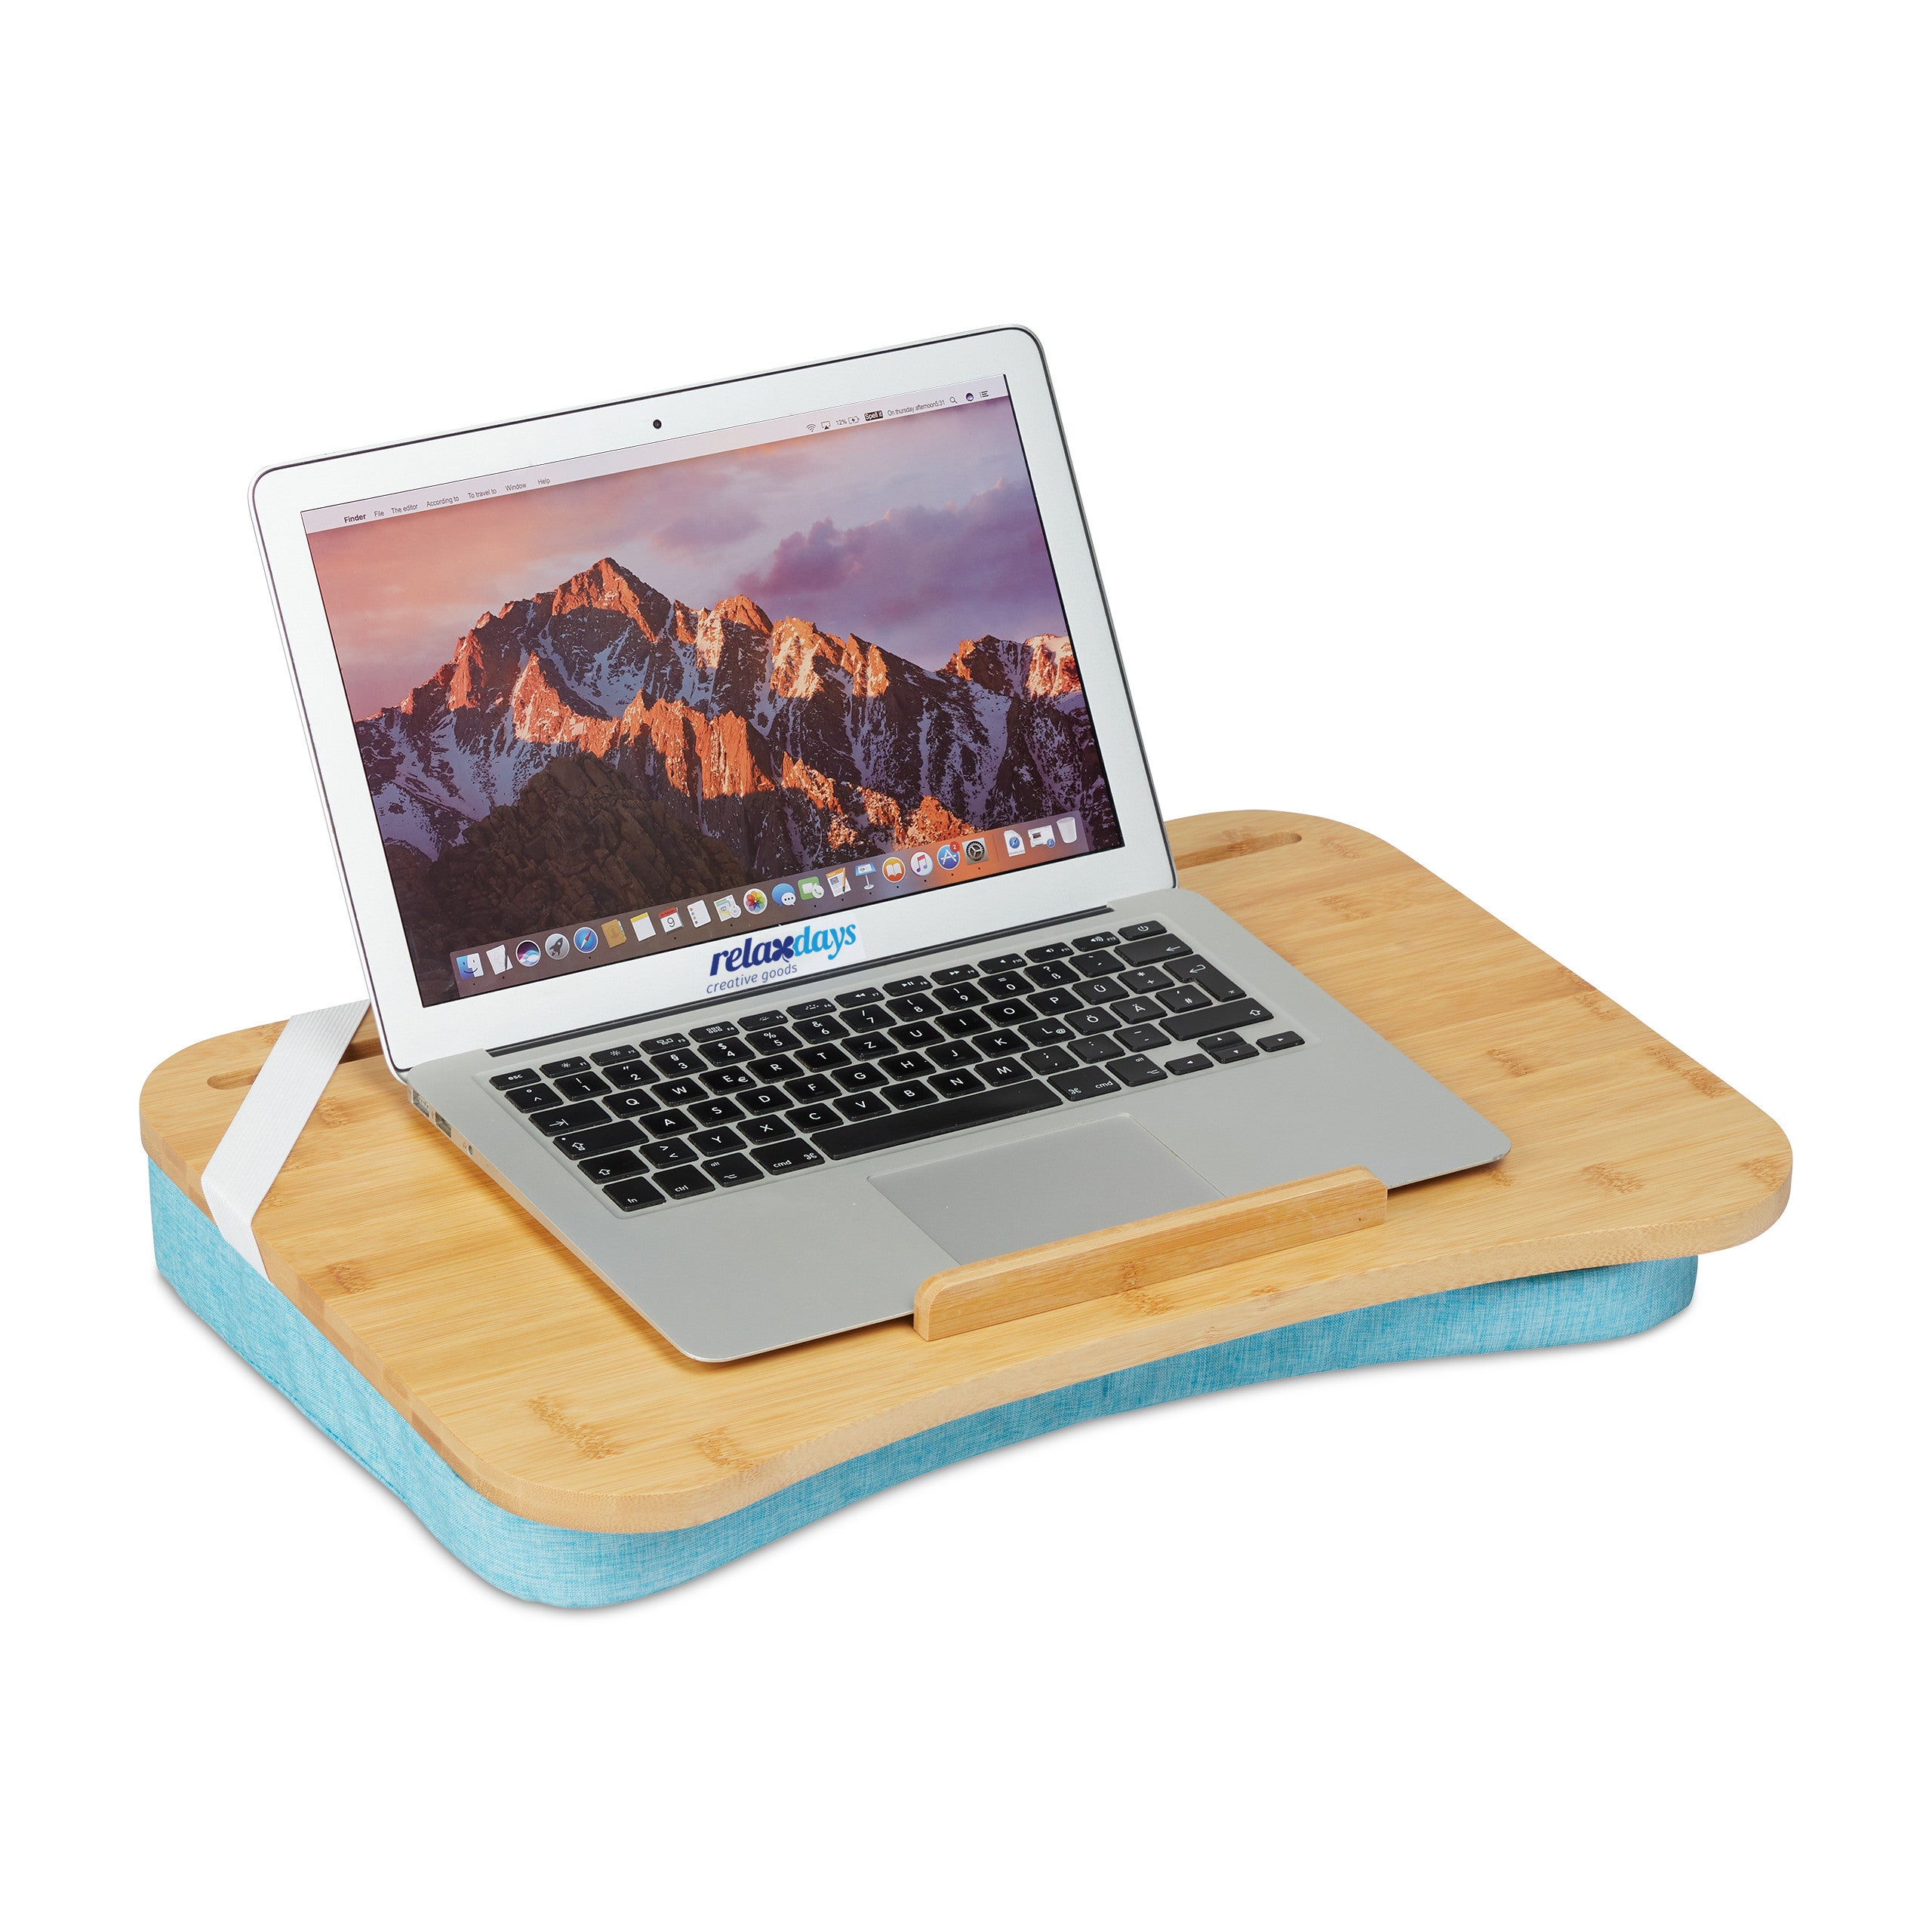 Un support en bambou pour PC portable, pour télétravailler au lit